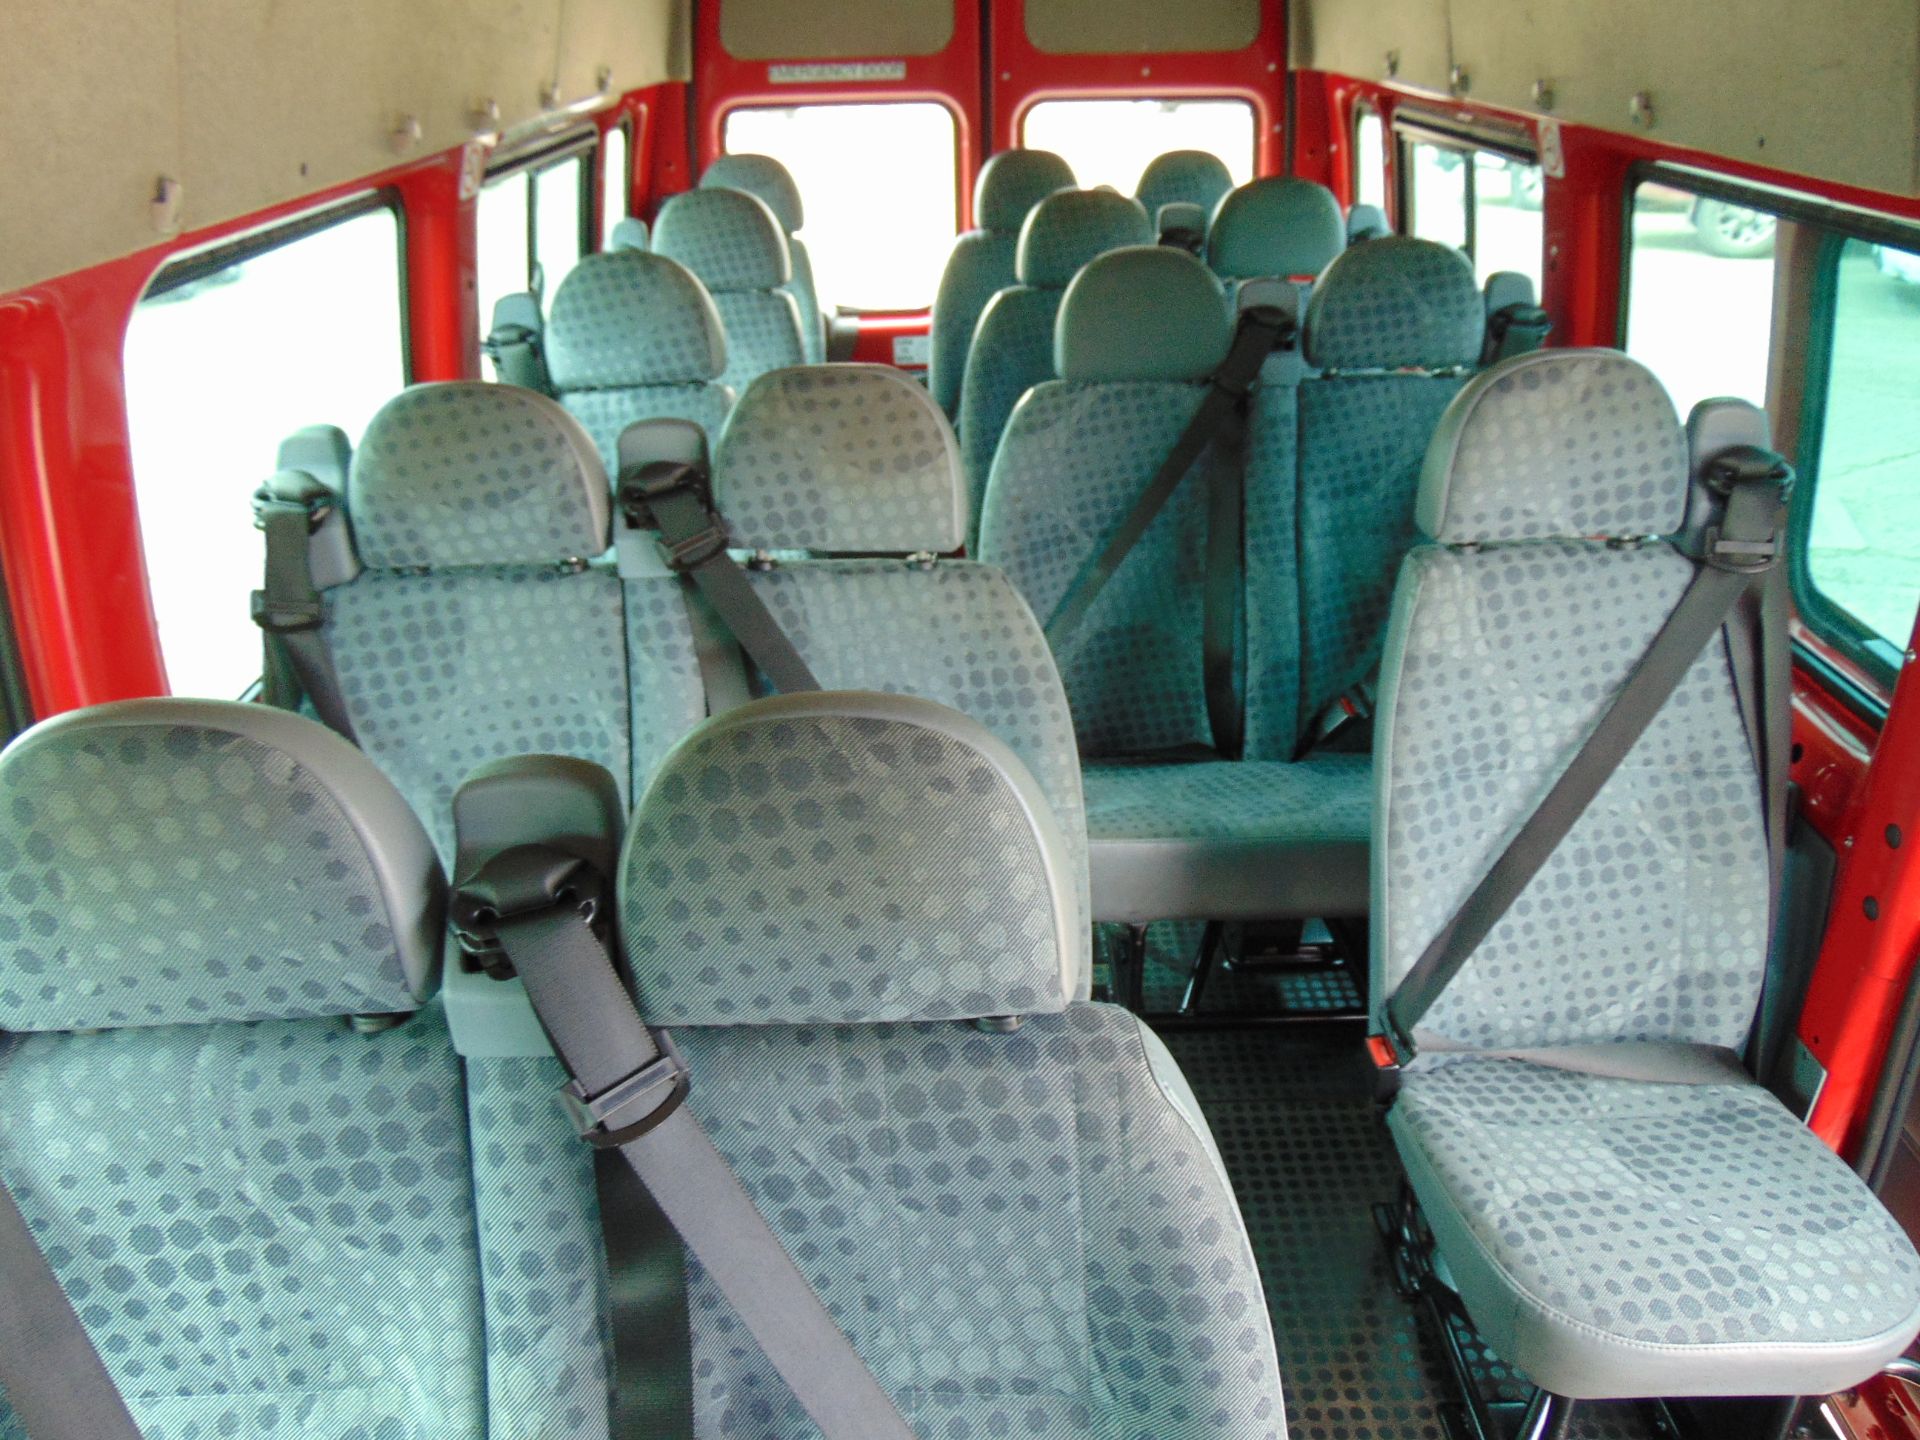 Ford Transit RWD 16 Seat Minibus - Image 19 of 27